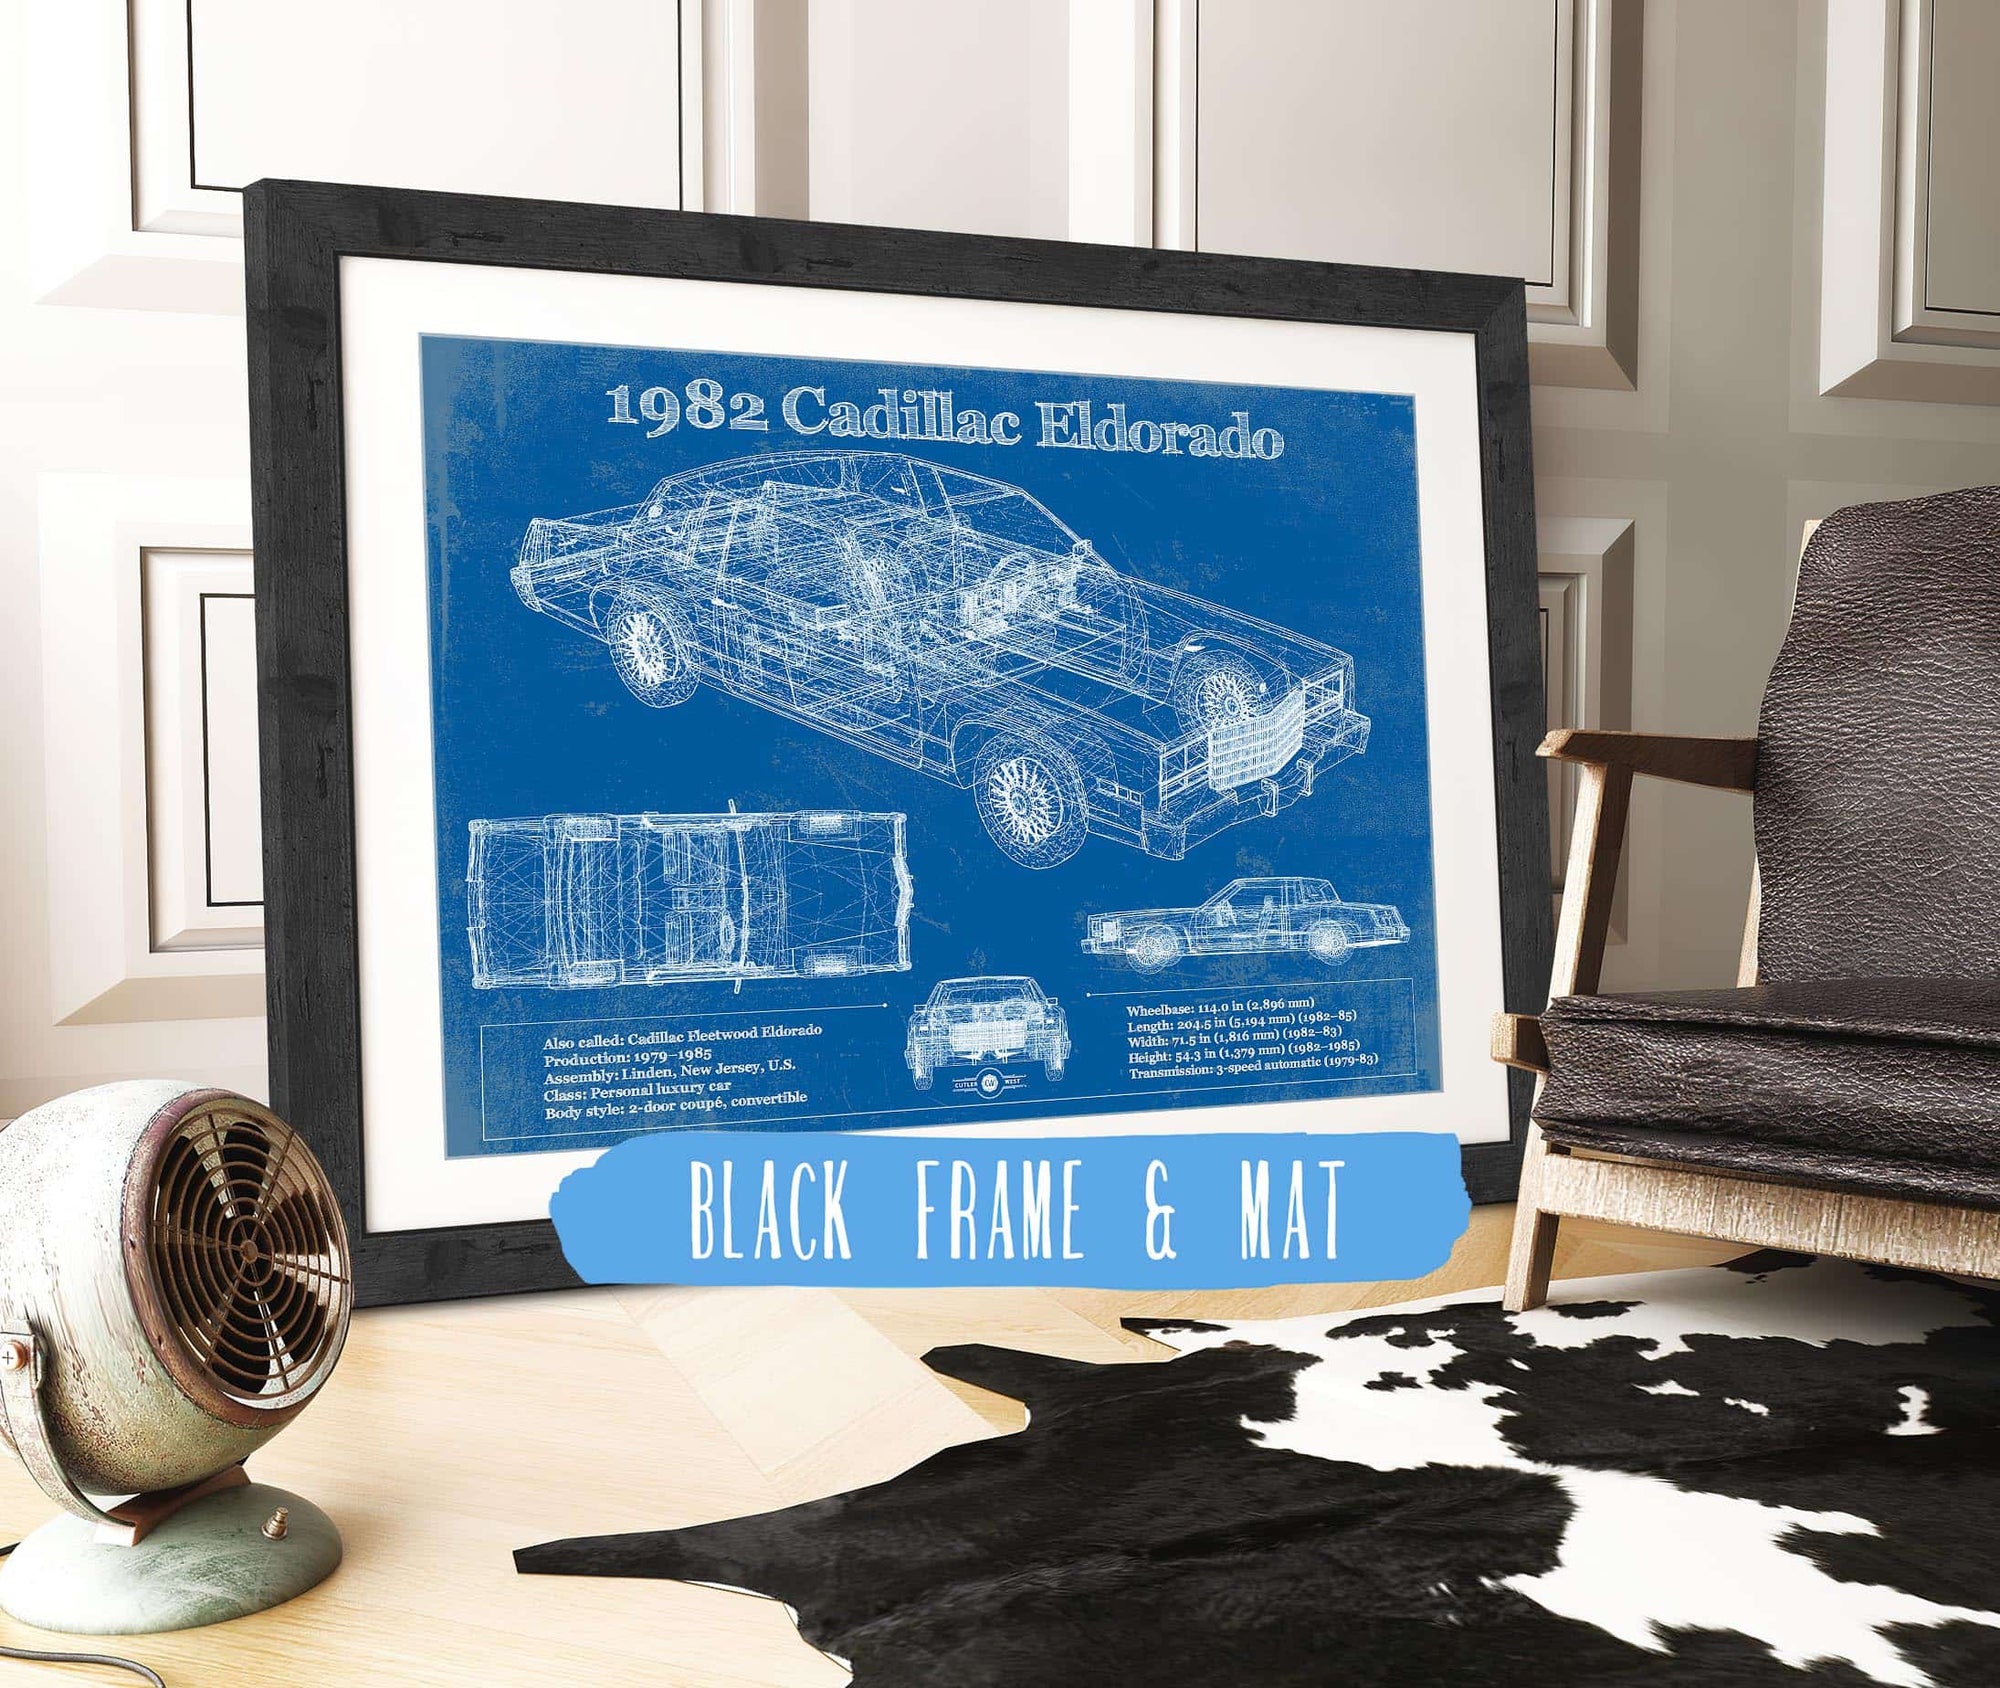 Cutler West 1982-1983 Cadillac Eldorado Vintage Blueprint Auto Print